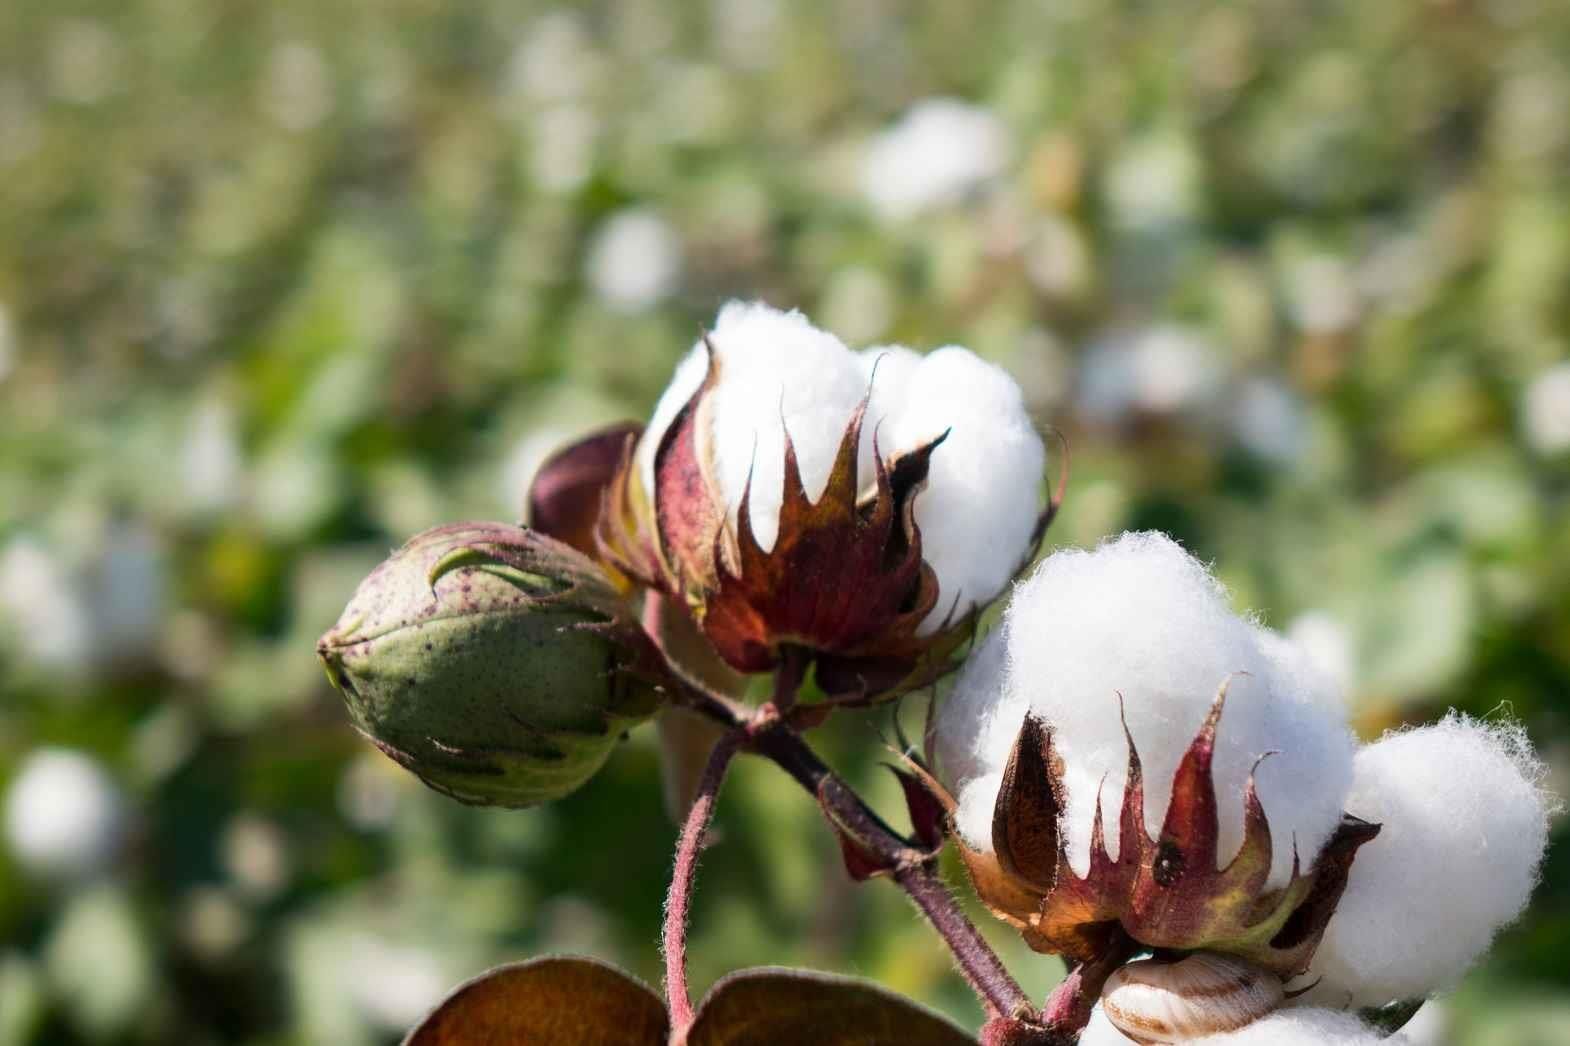 Kasturi – The Finest Cotton from India